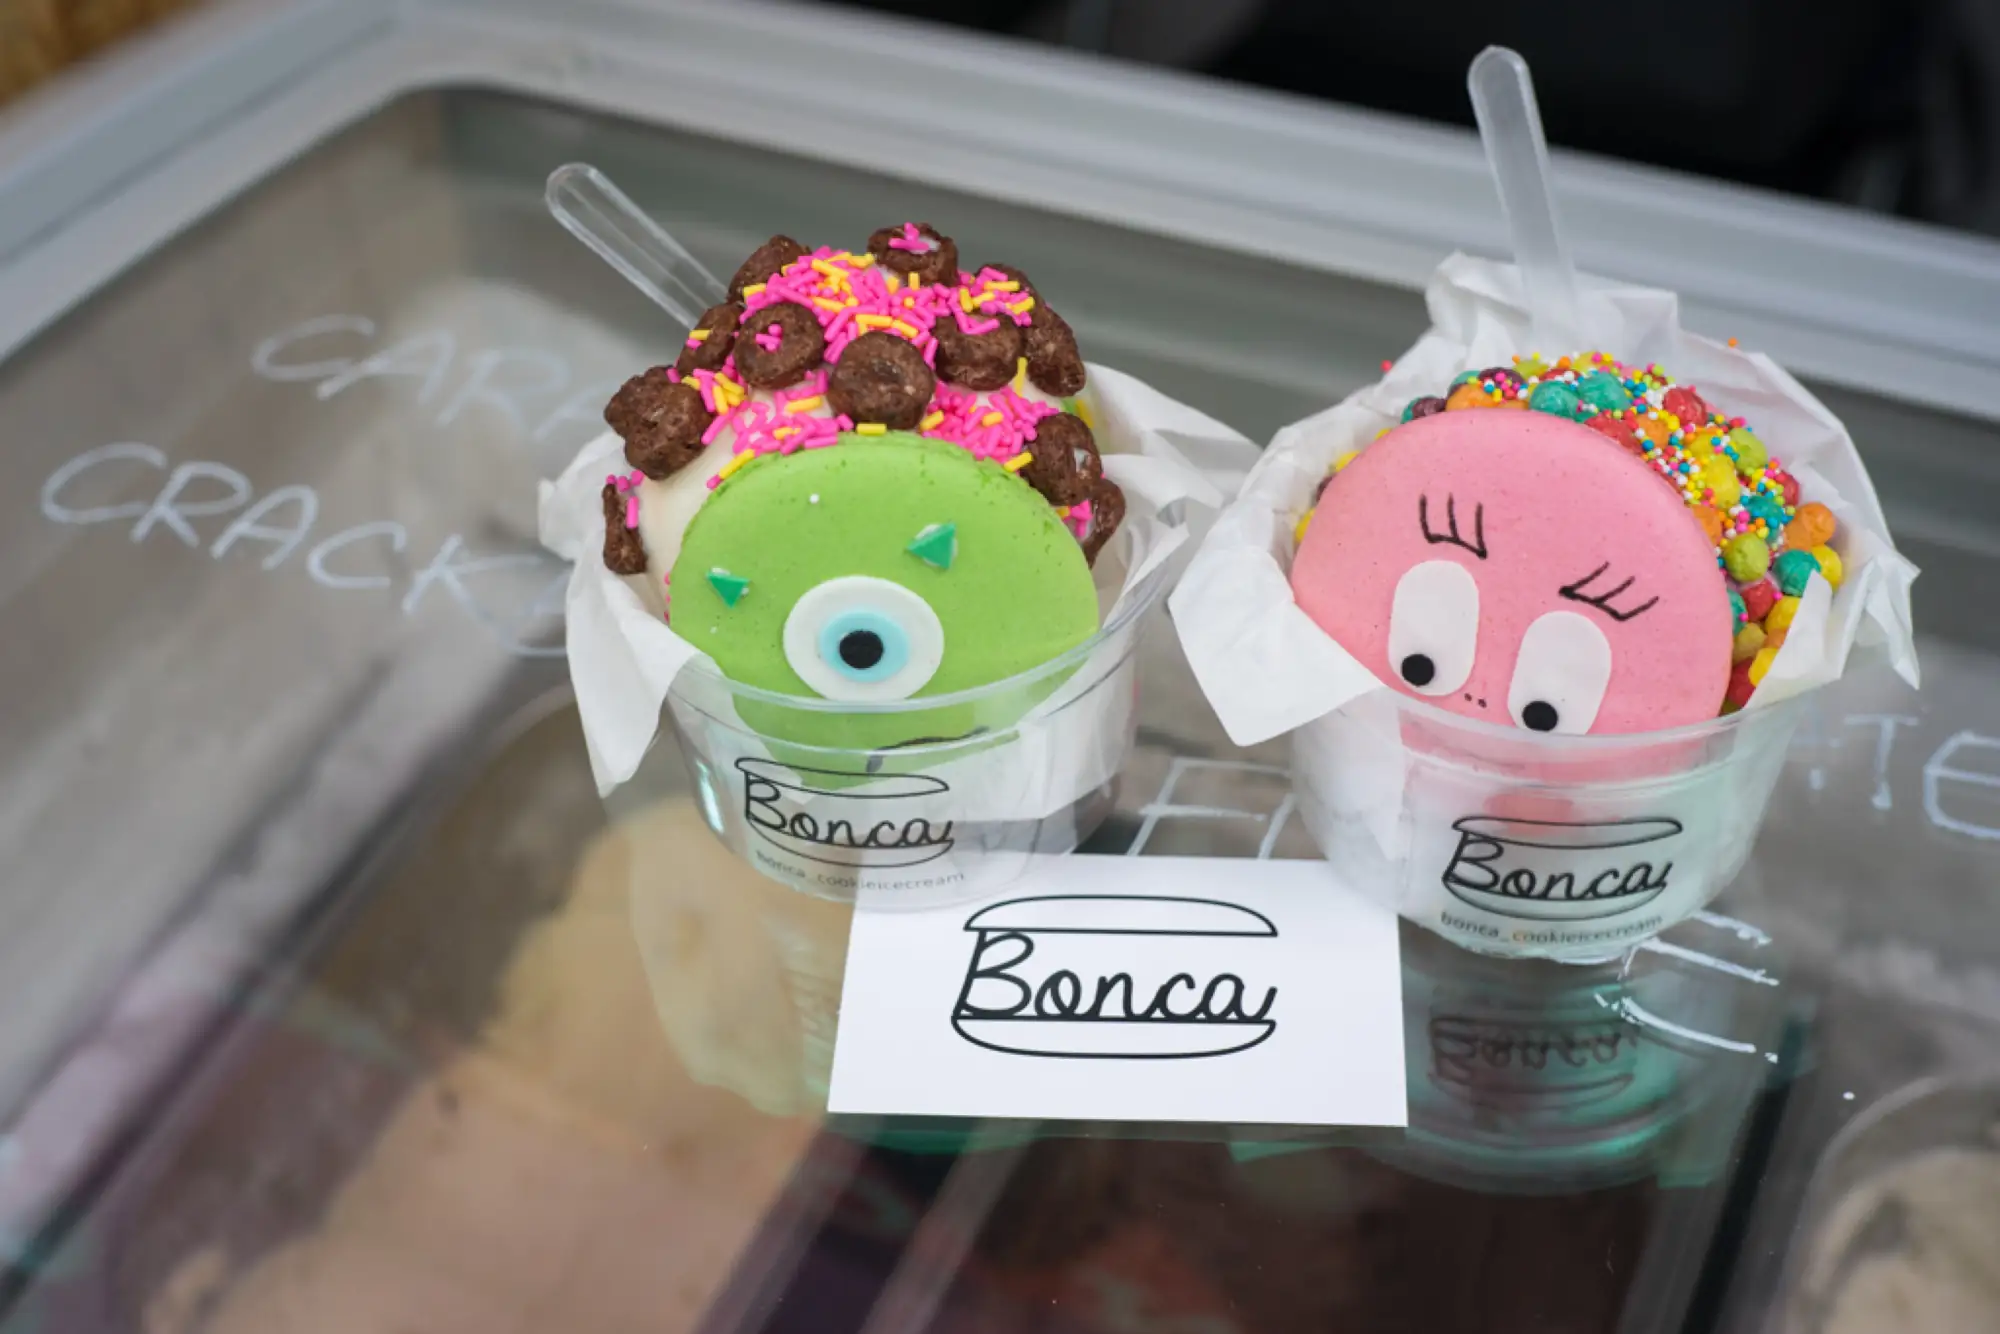 Bonca創辦人專訪 當馬卡龍遇上冰淇淋 曼谷街頭甜蜜瞬間